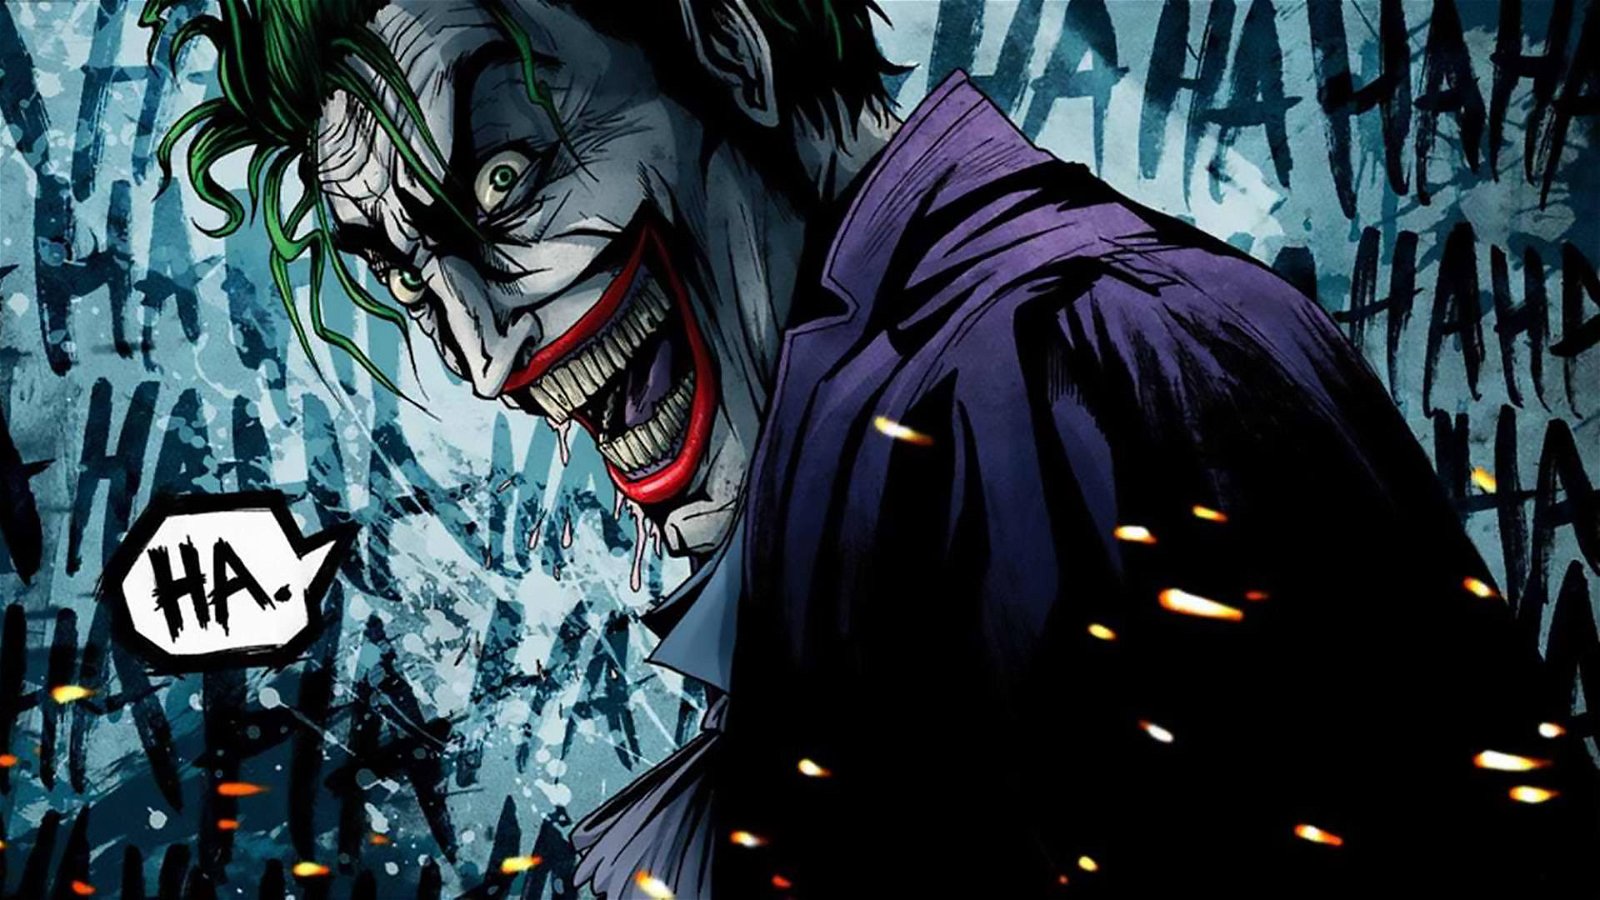 Immagine di Joker, la sinossi ufficiale ci dice che sarà un film sulle origini